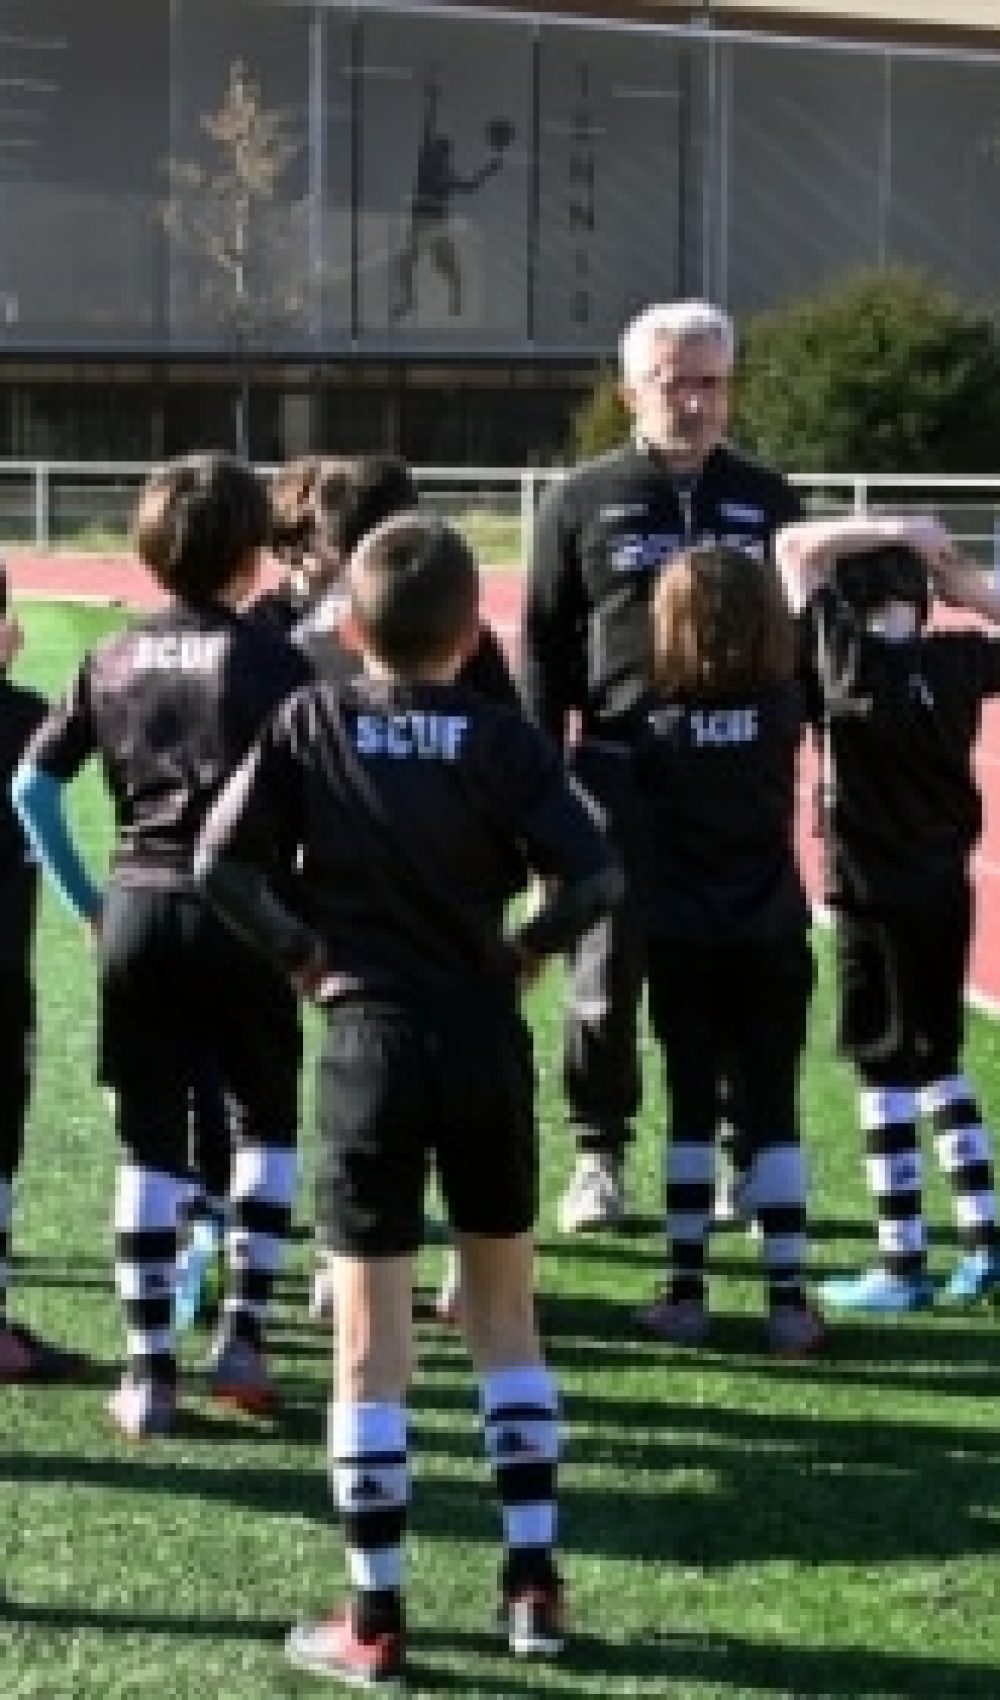 entrainement enfants dès 4 ans Rugby